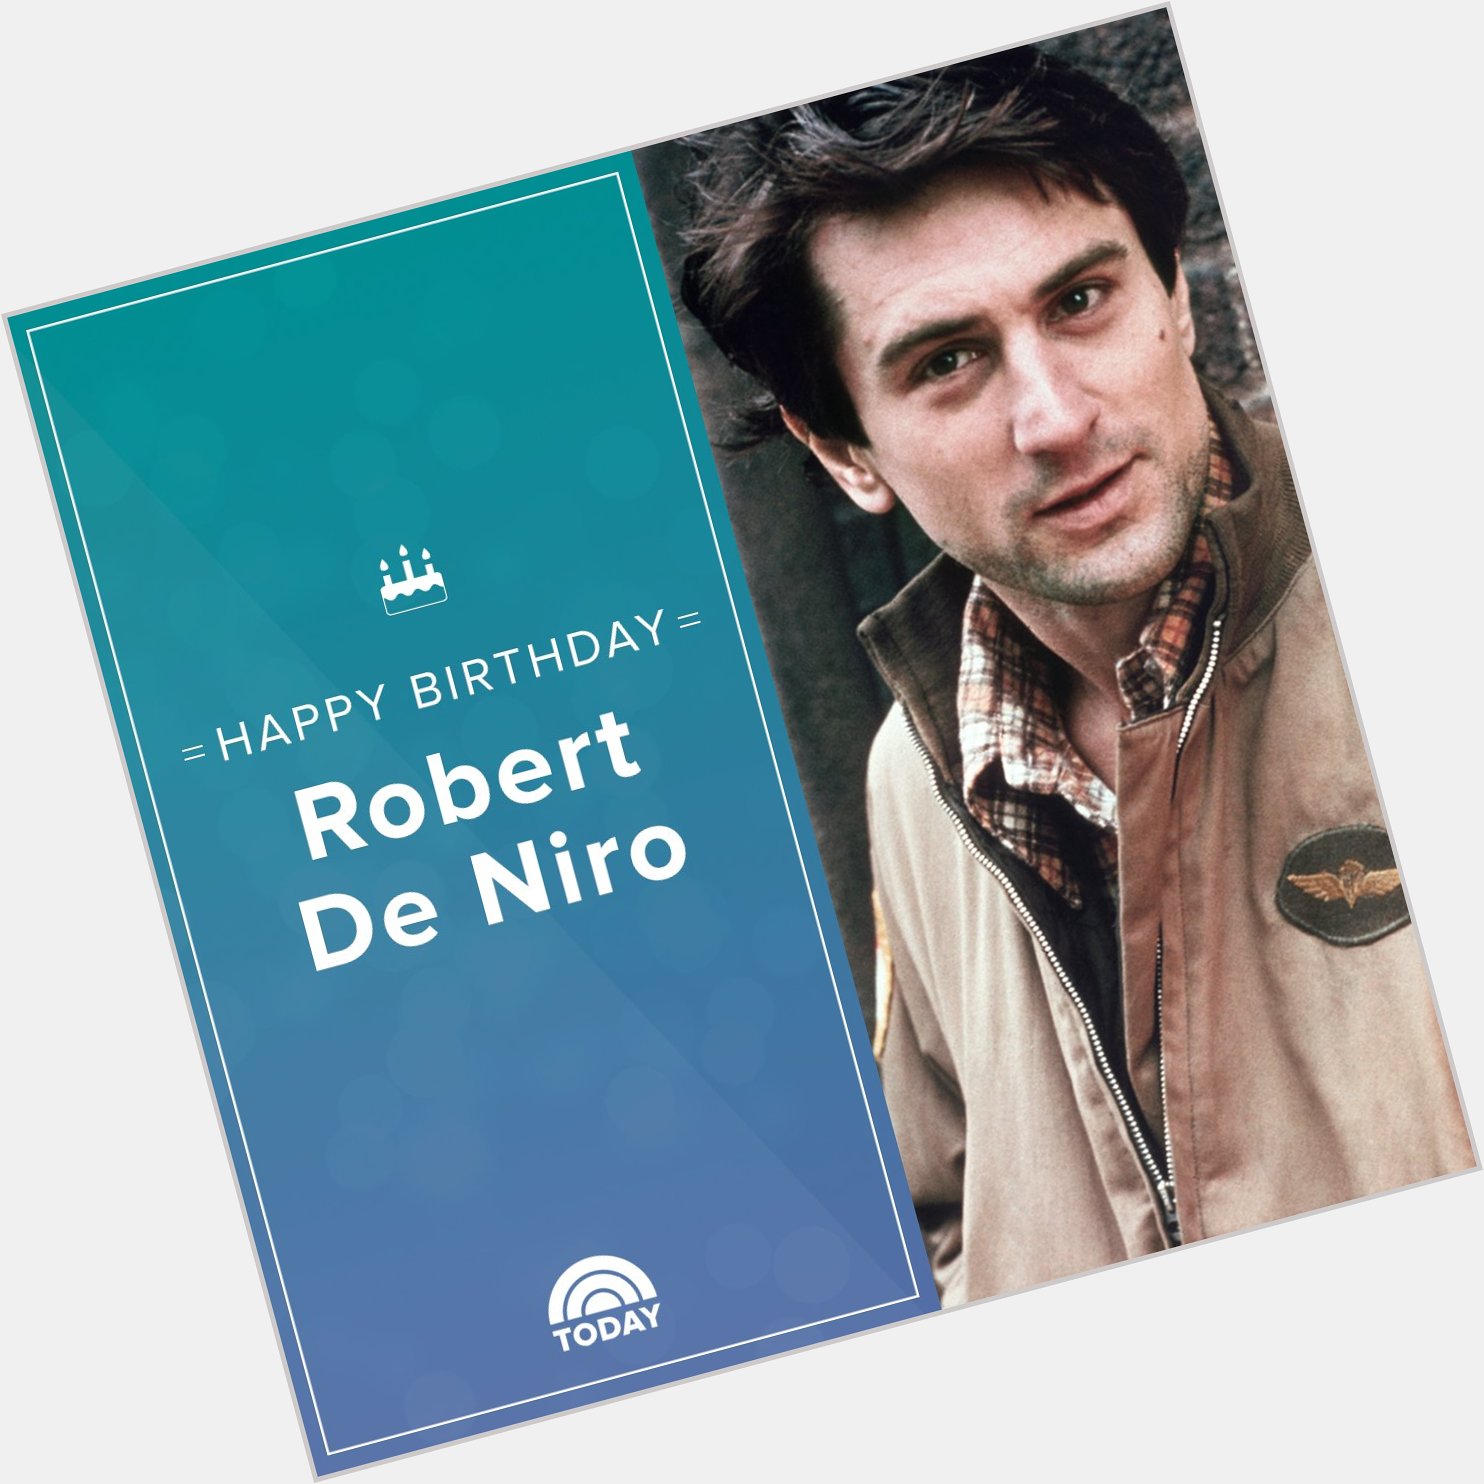 Happy birthday, Robert De Niro!  